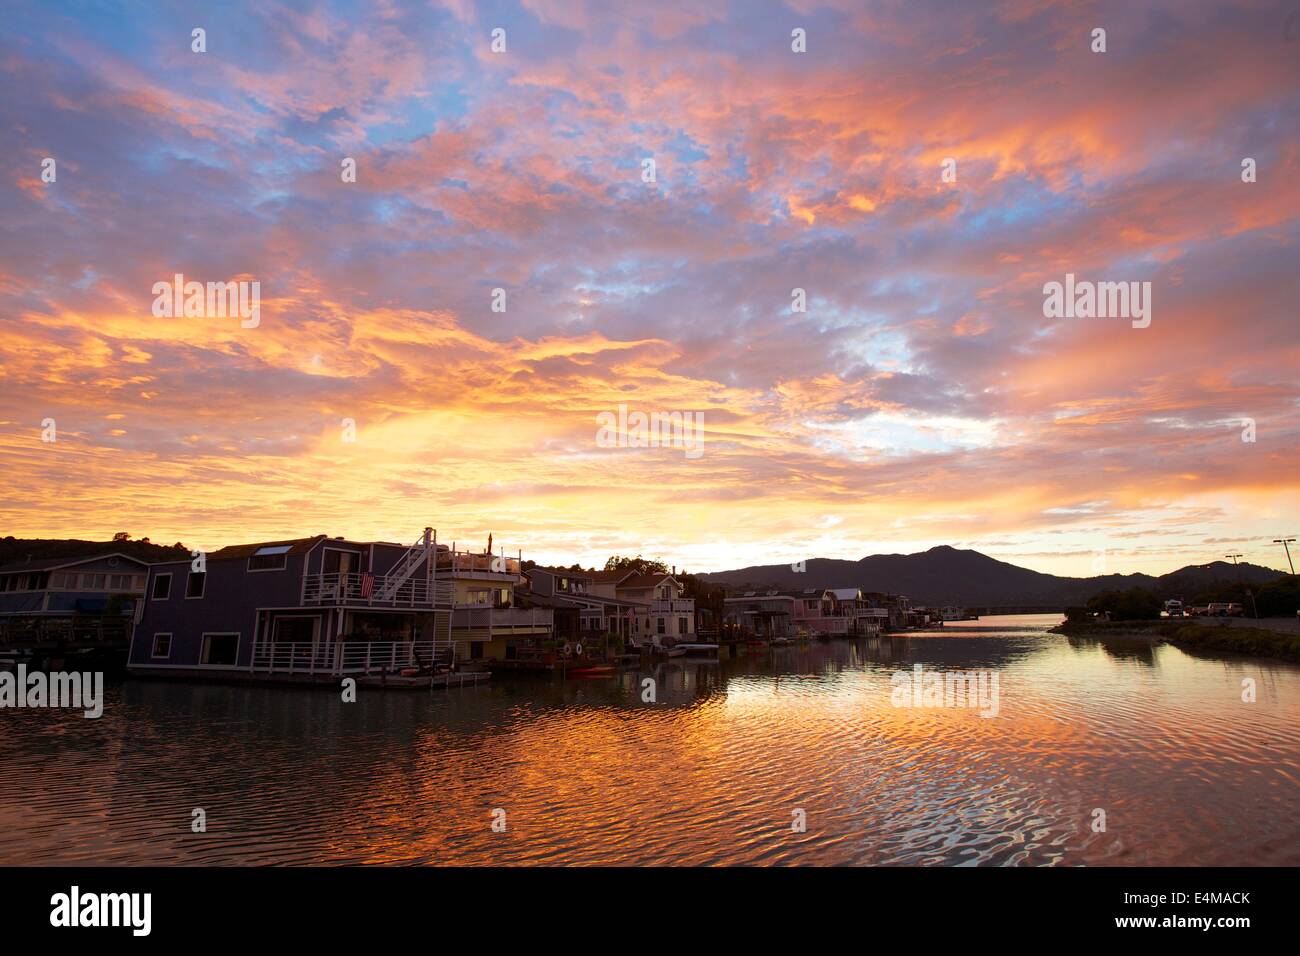 Un incredibile tramonto su Waldo punto Harbour e case galleggianti in Sausalito, California con Mt. Tamalpais in background. Foto Stock